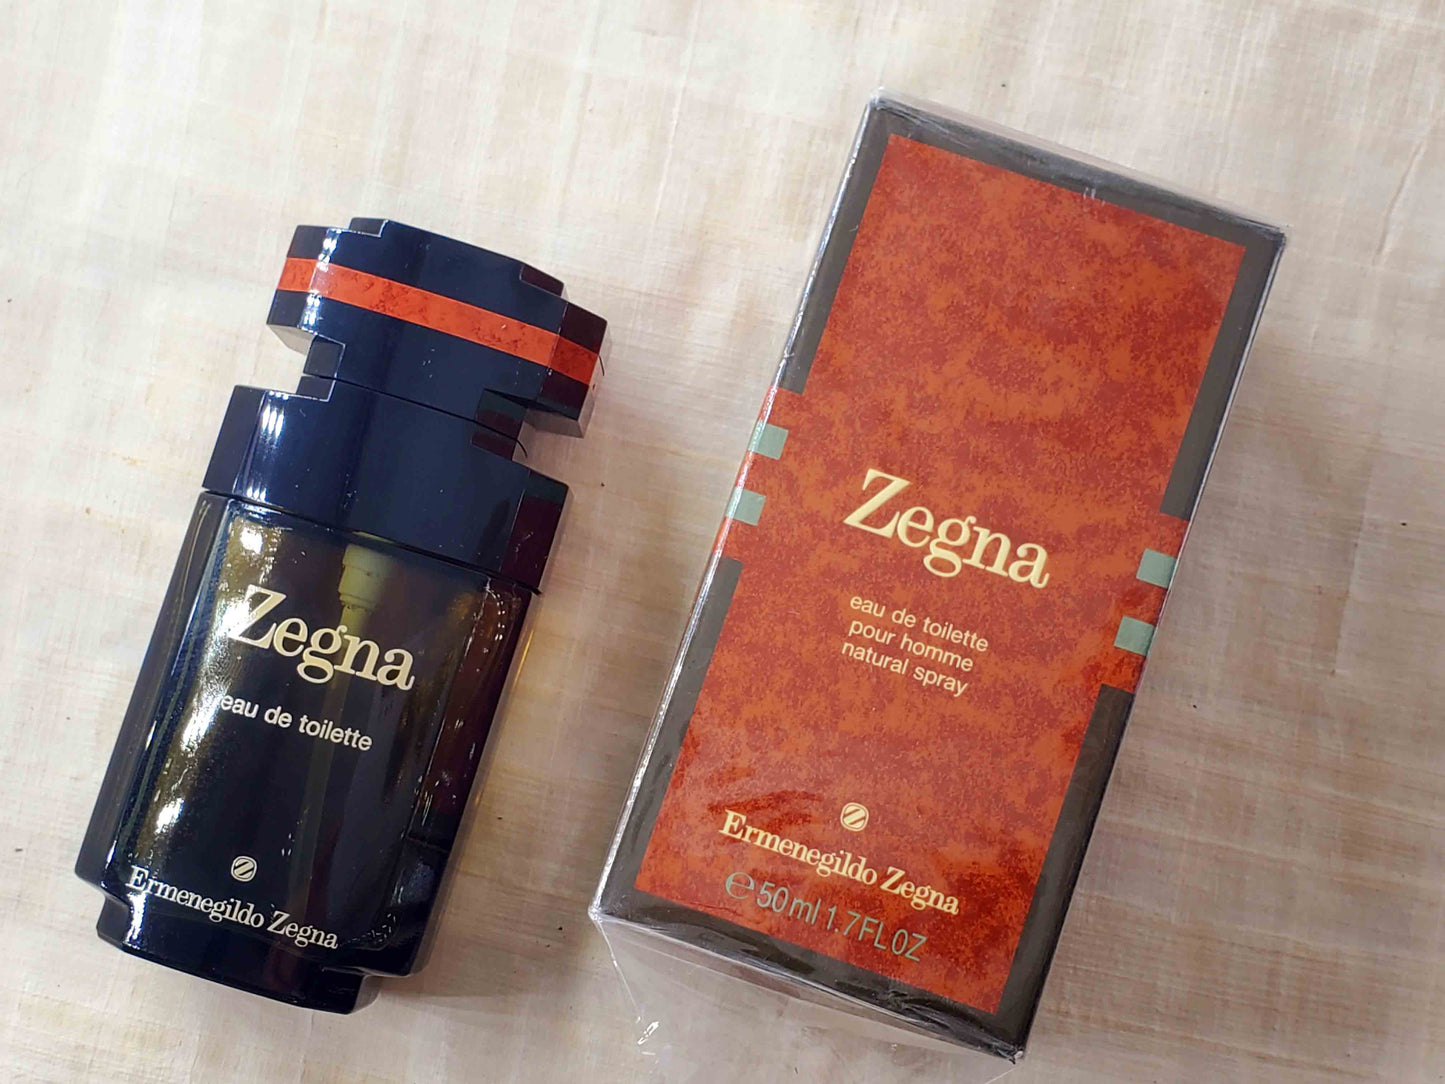 Zegna Pour Homme Ermenegildo Zegna for men EDT Spray 100 ml 3.4 oz OR 50 ml 1.7 oz, Rare, Vintage, Sealed